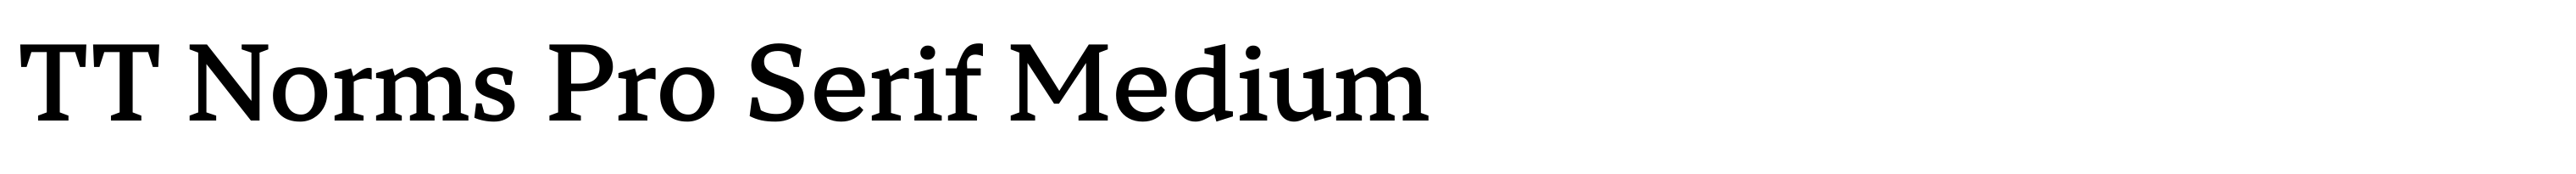 TT Norms Pro Serif Medium